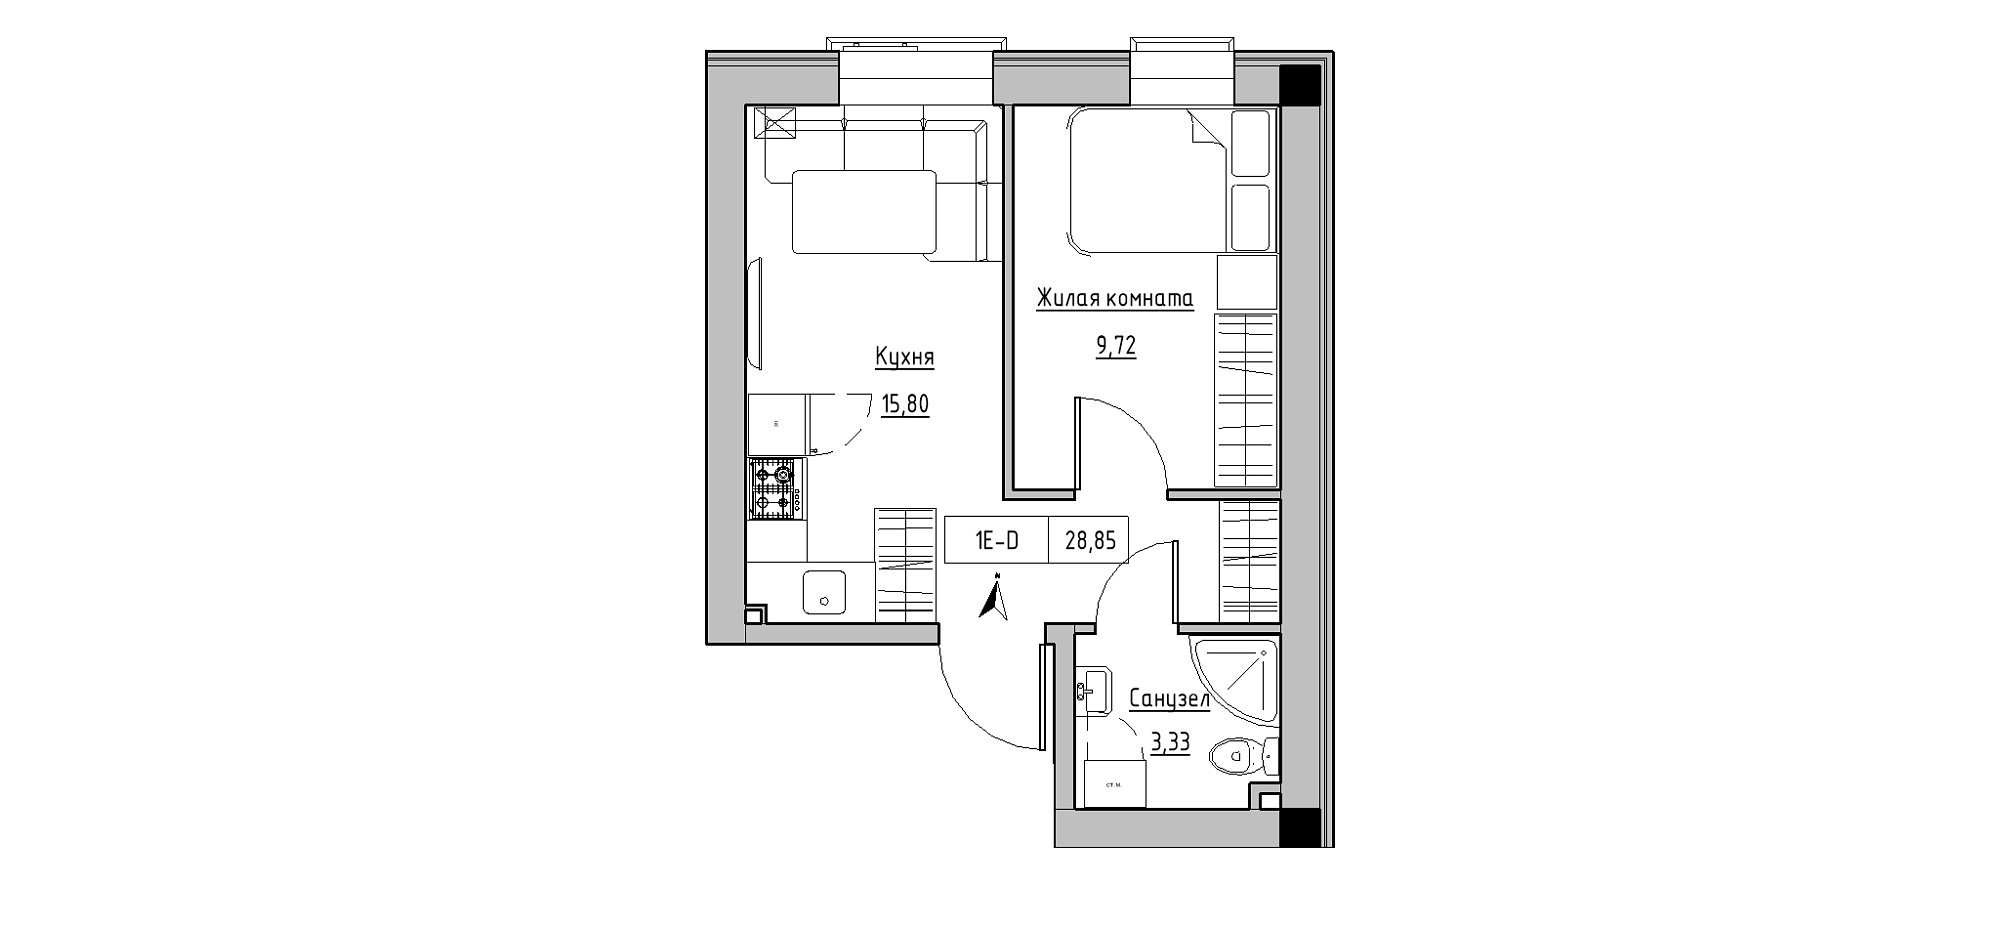 Планировка 1-к квартира площей 28.85м2, KS-020-01/0002.